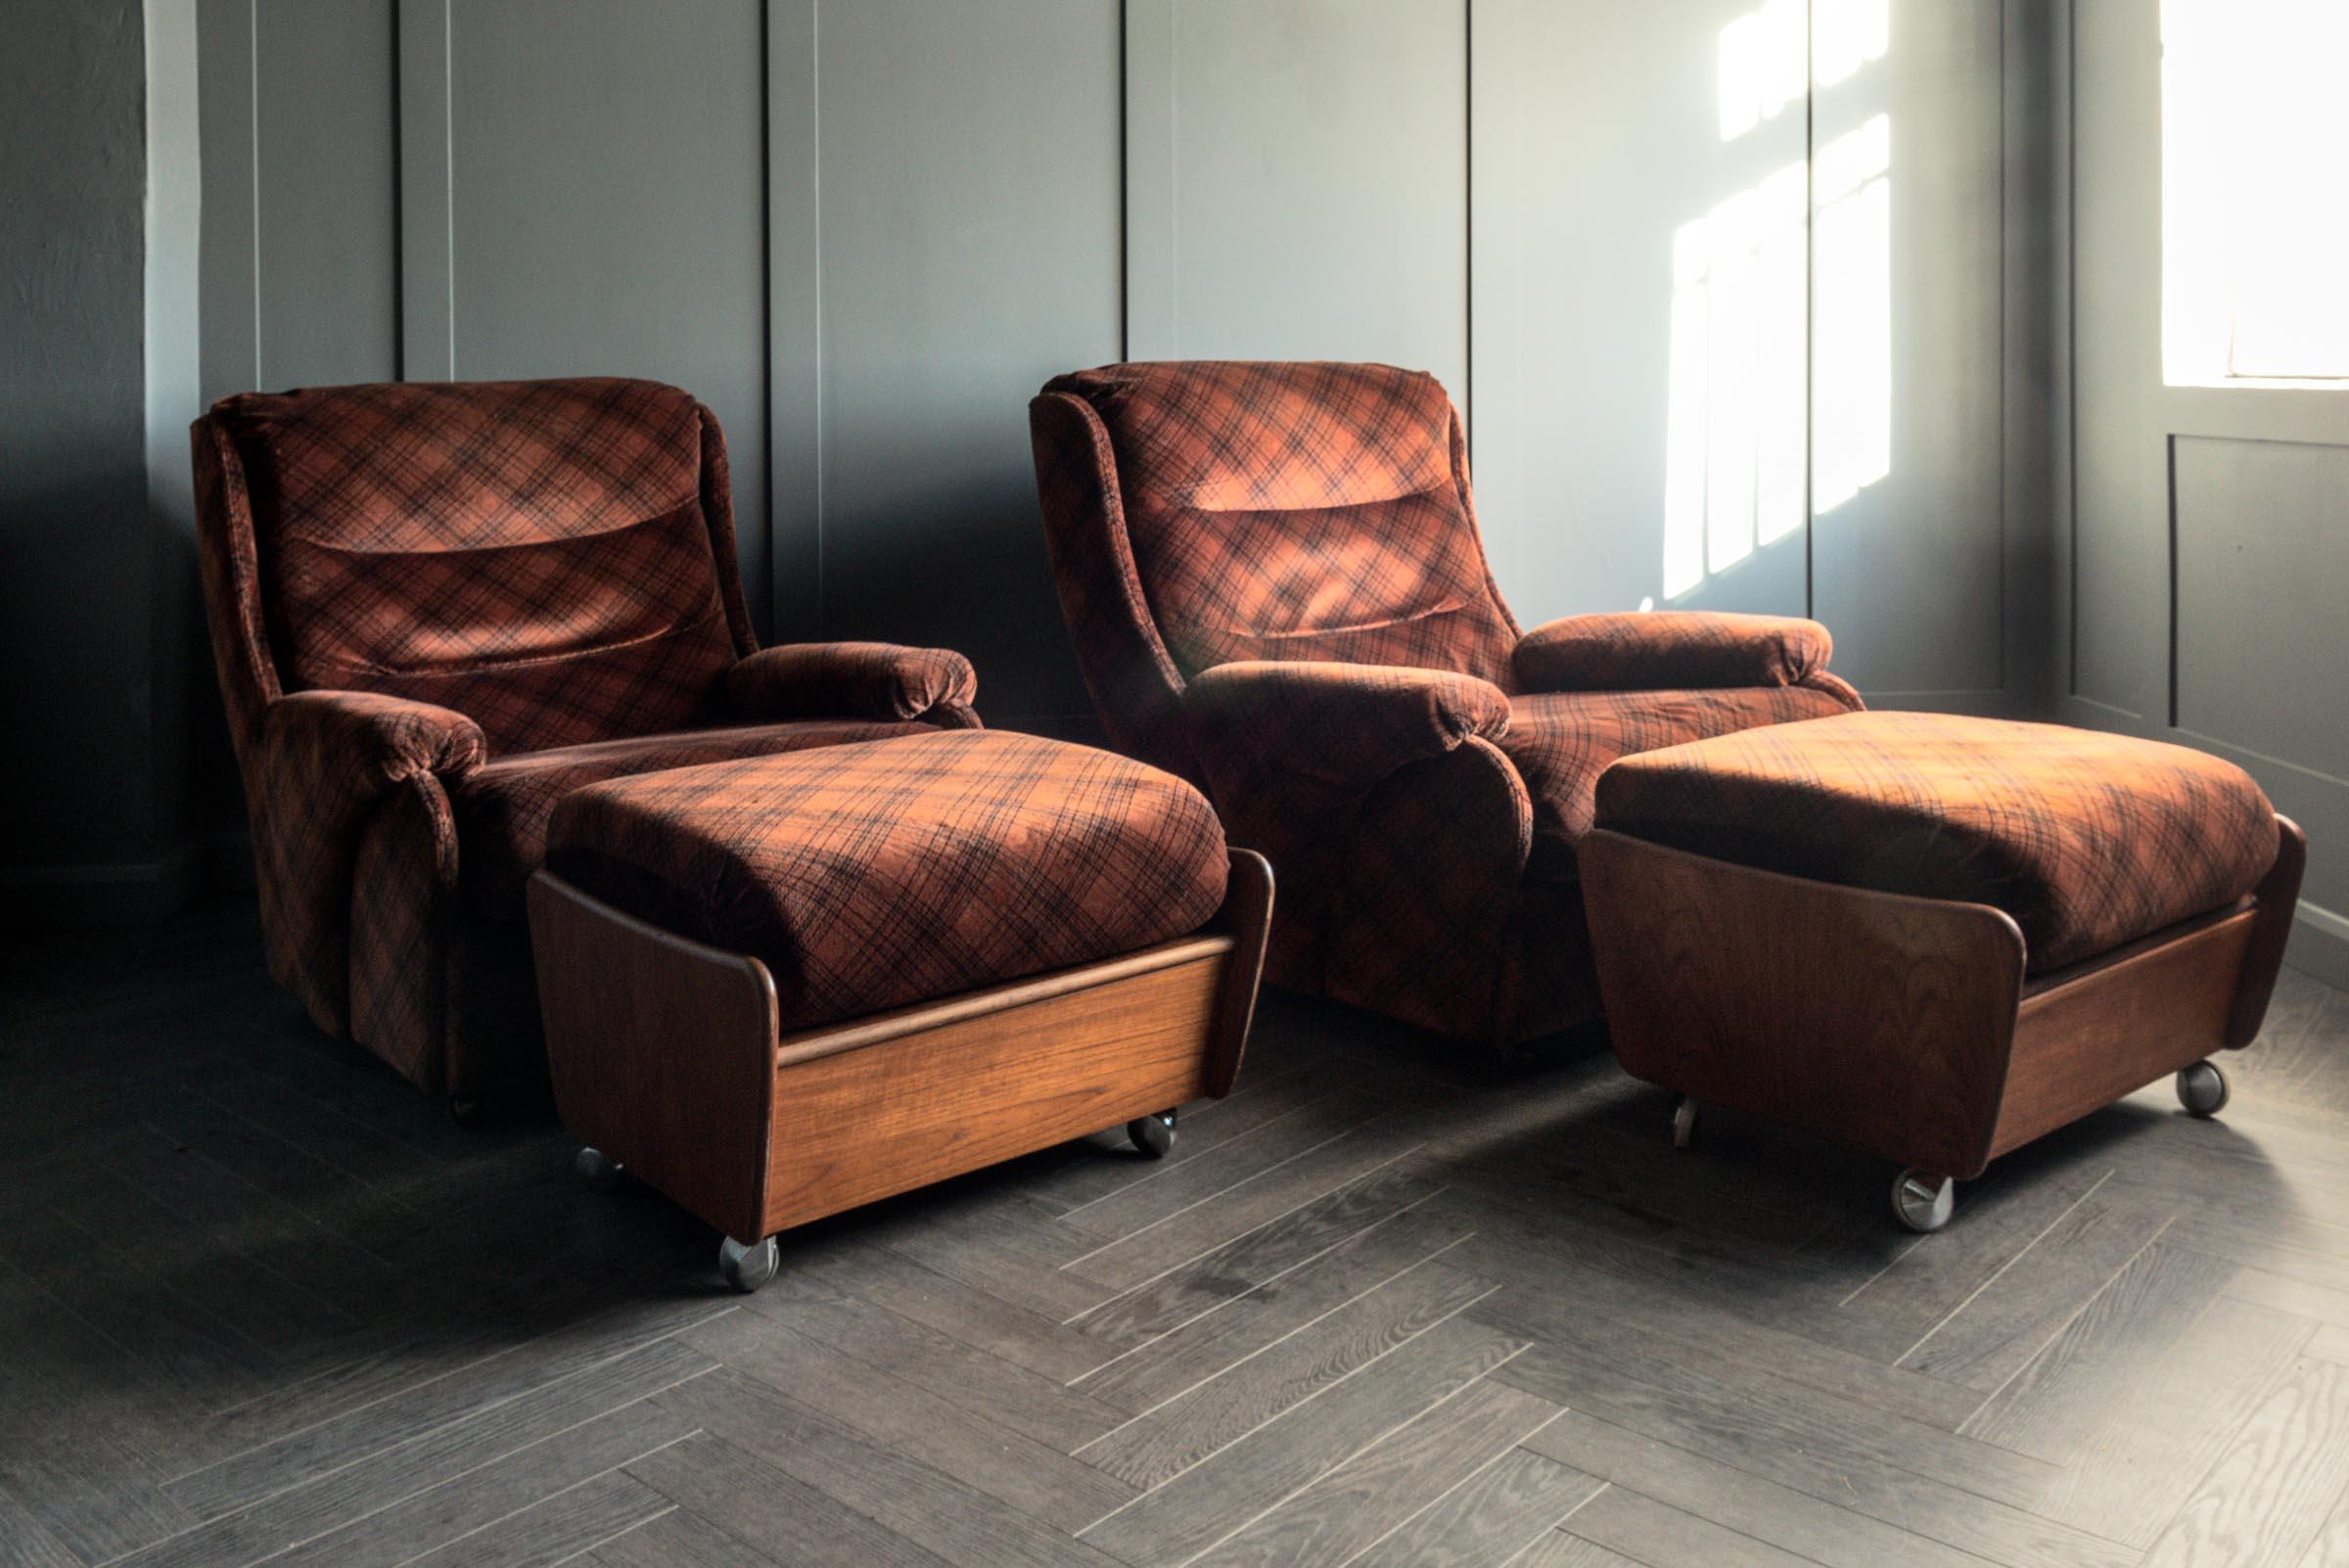 Äußerst seltenes und schnell an Wert gewinnendes Paar Mikado-Sessel von G Plan mit passenden Fußhockern. Retro-Vintage-Stil aus der Mitte des Jahrhunderts, ca. 1973, Stoff L702 'Verona'. Ein zukünftiger Klassiker, der schnell Kultstatus erlangt und